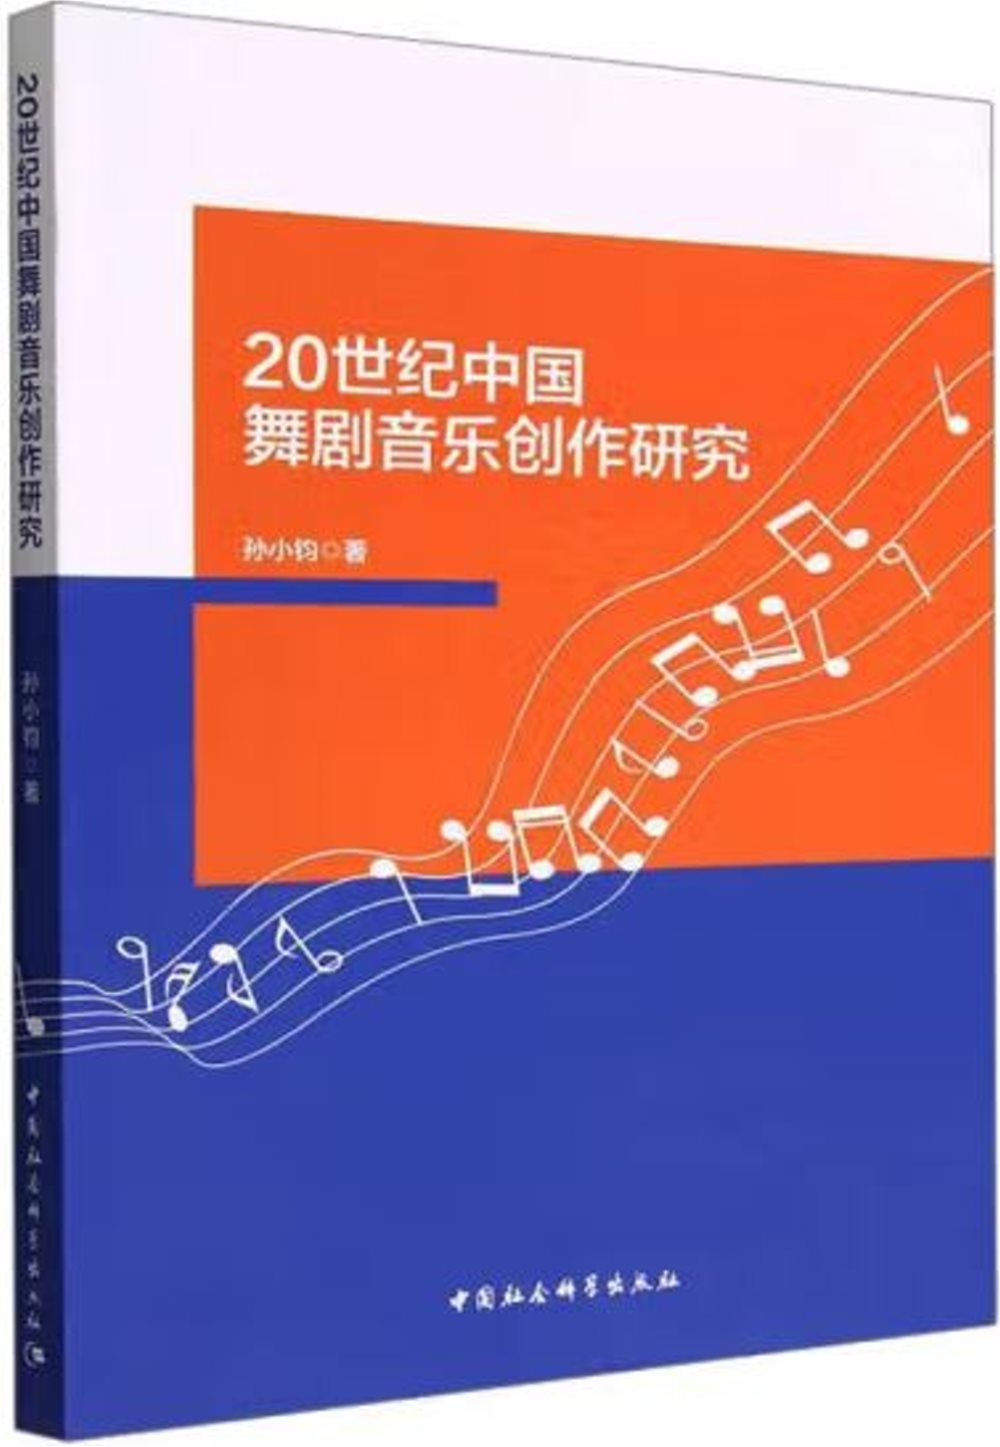 20世紀中國舞劇音樂創作研究